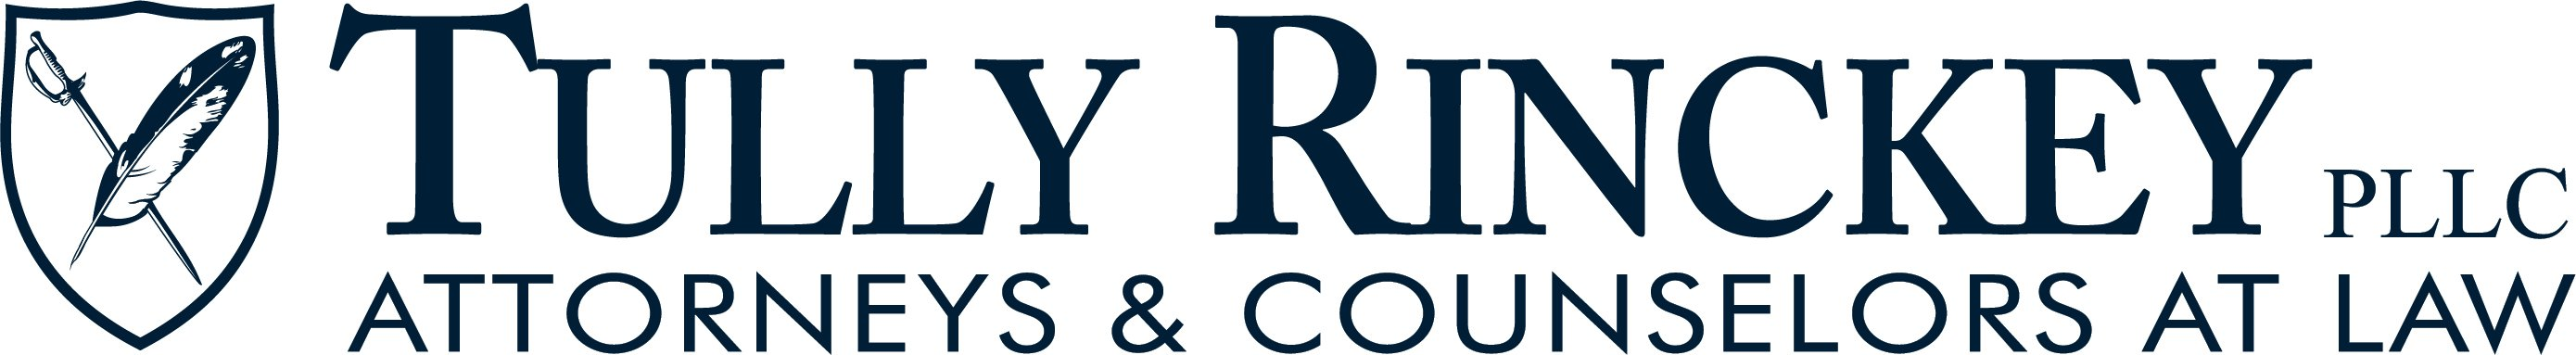 Tully Rinckey PLLC Company Logo